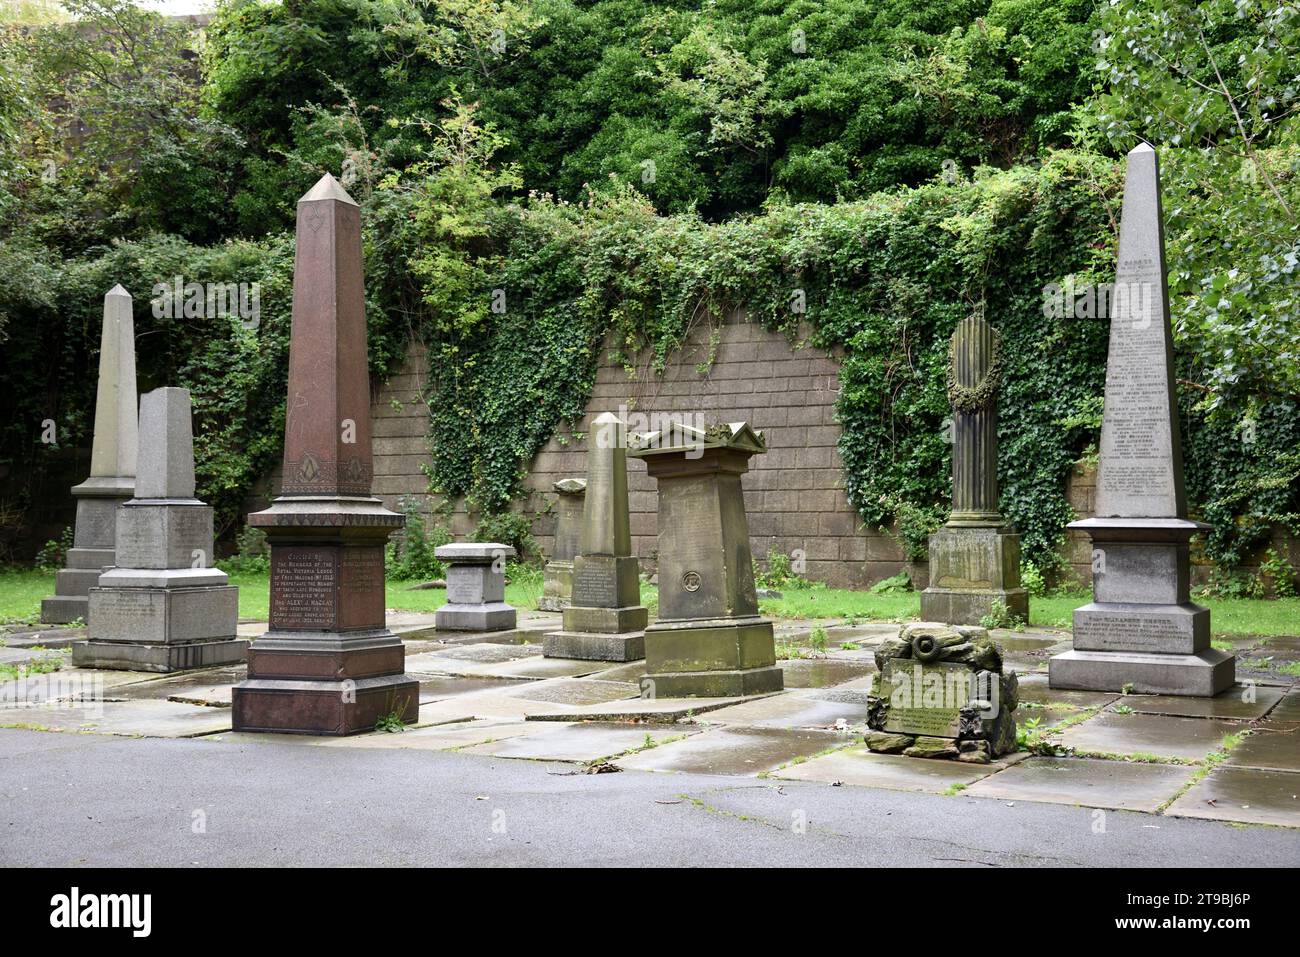 Historic Obelisk Tombs, Tombstones, Graves, Graveyard & Gravestones in St. James Memorial Cemetery, Saint James Mount & Gardens Liverpool Stock Photo